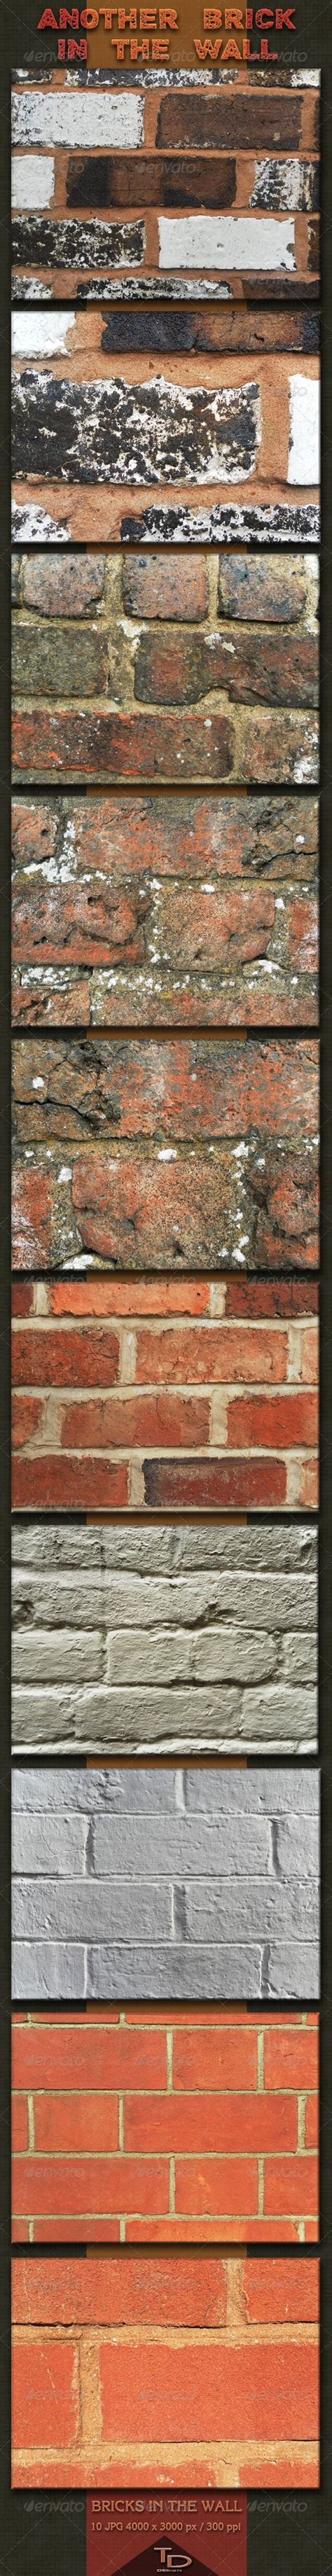 Another Brick In The Wall Brick In The Wall Brick Textured Background